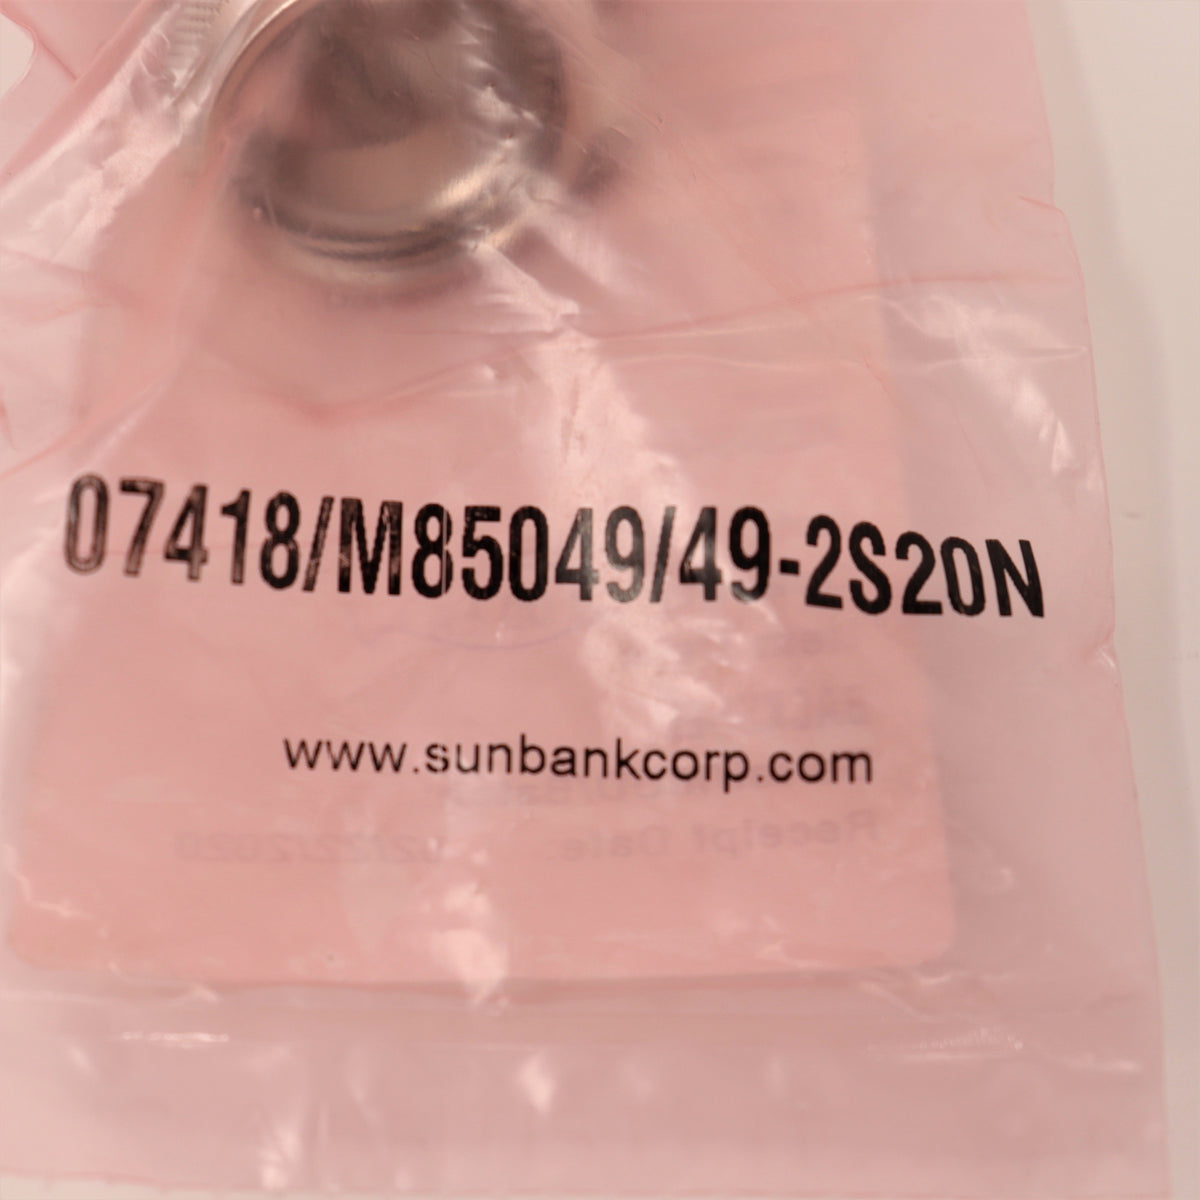 Sunbank Backshell 07418/ M85049/49-2S20N